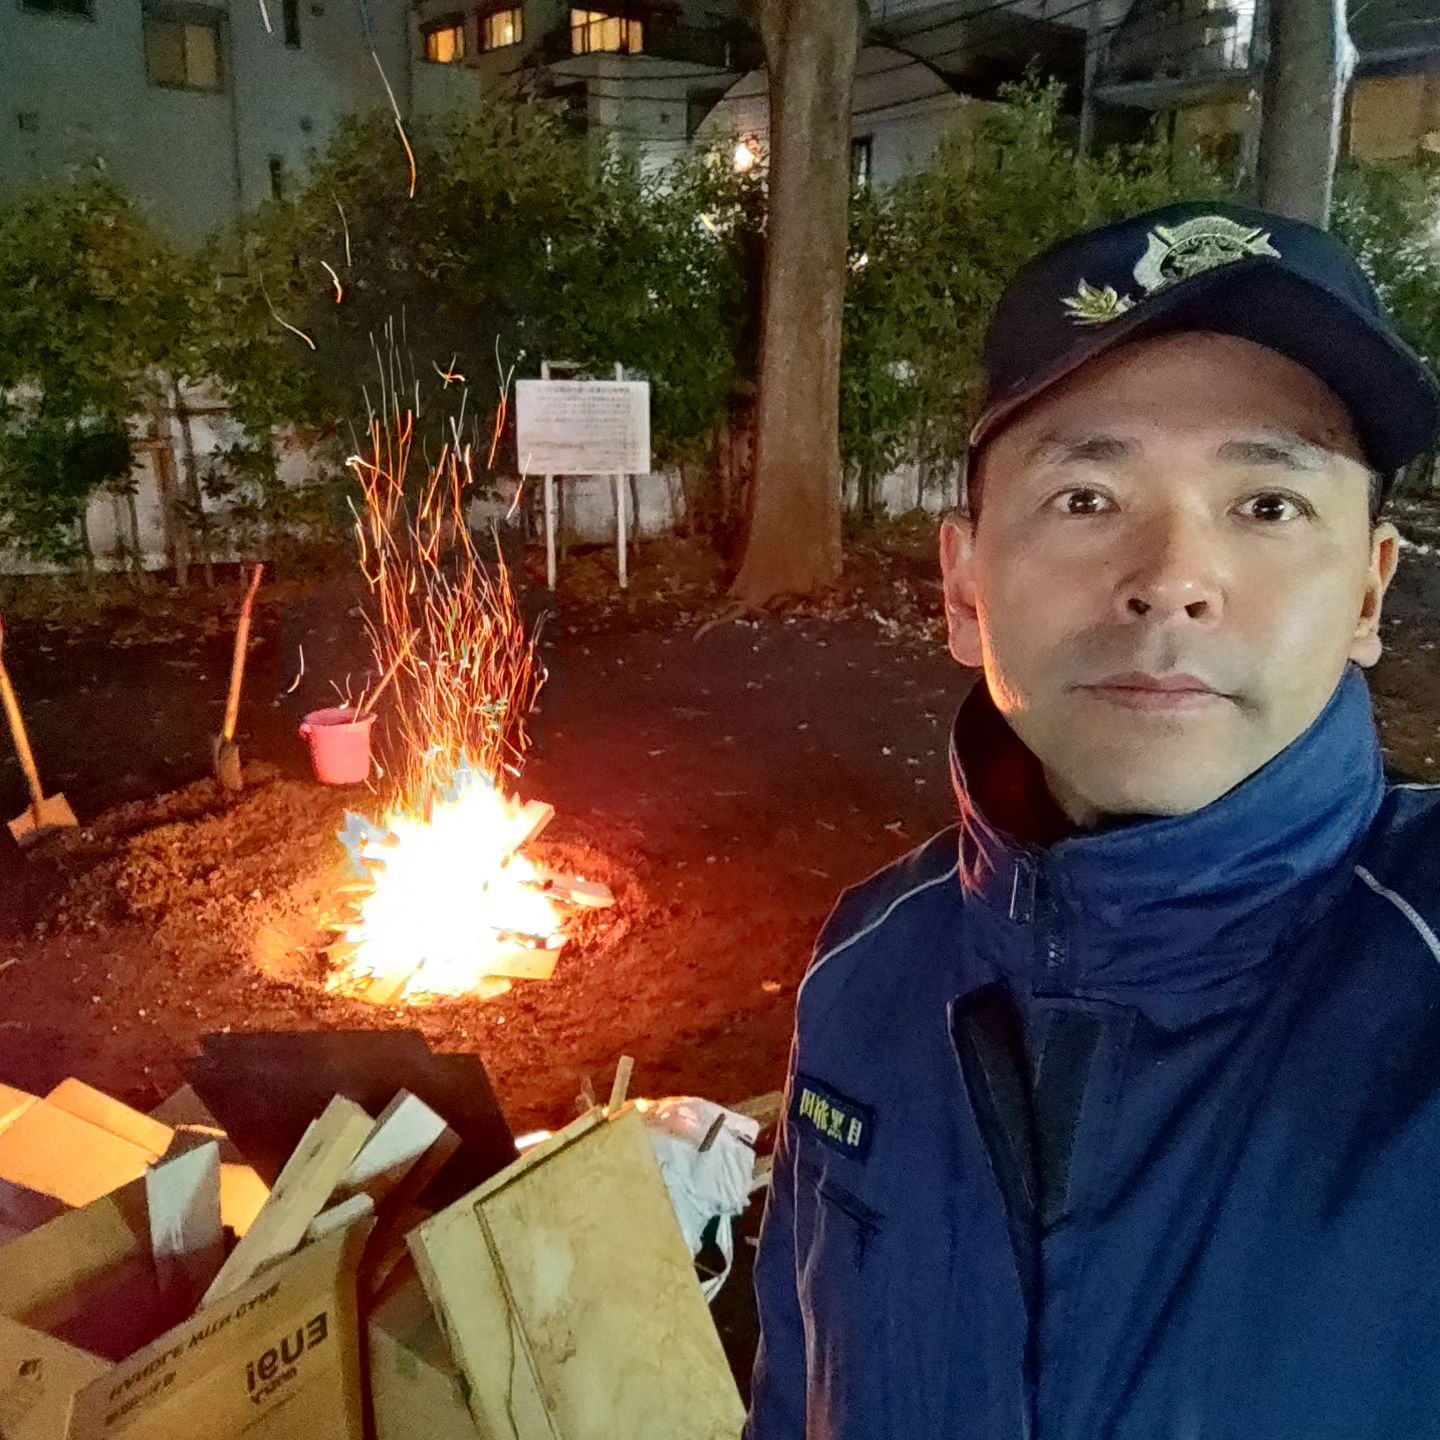 [ 【ゆく年くる年】年末恒例の火の番です by 消防団。今年最後のお礼参りか、新年の初詣か、、熊野神社にてお待ちしております ]